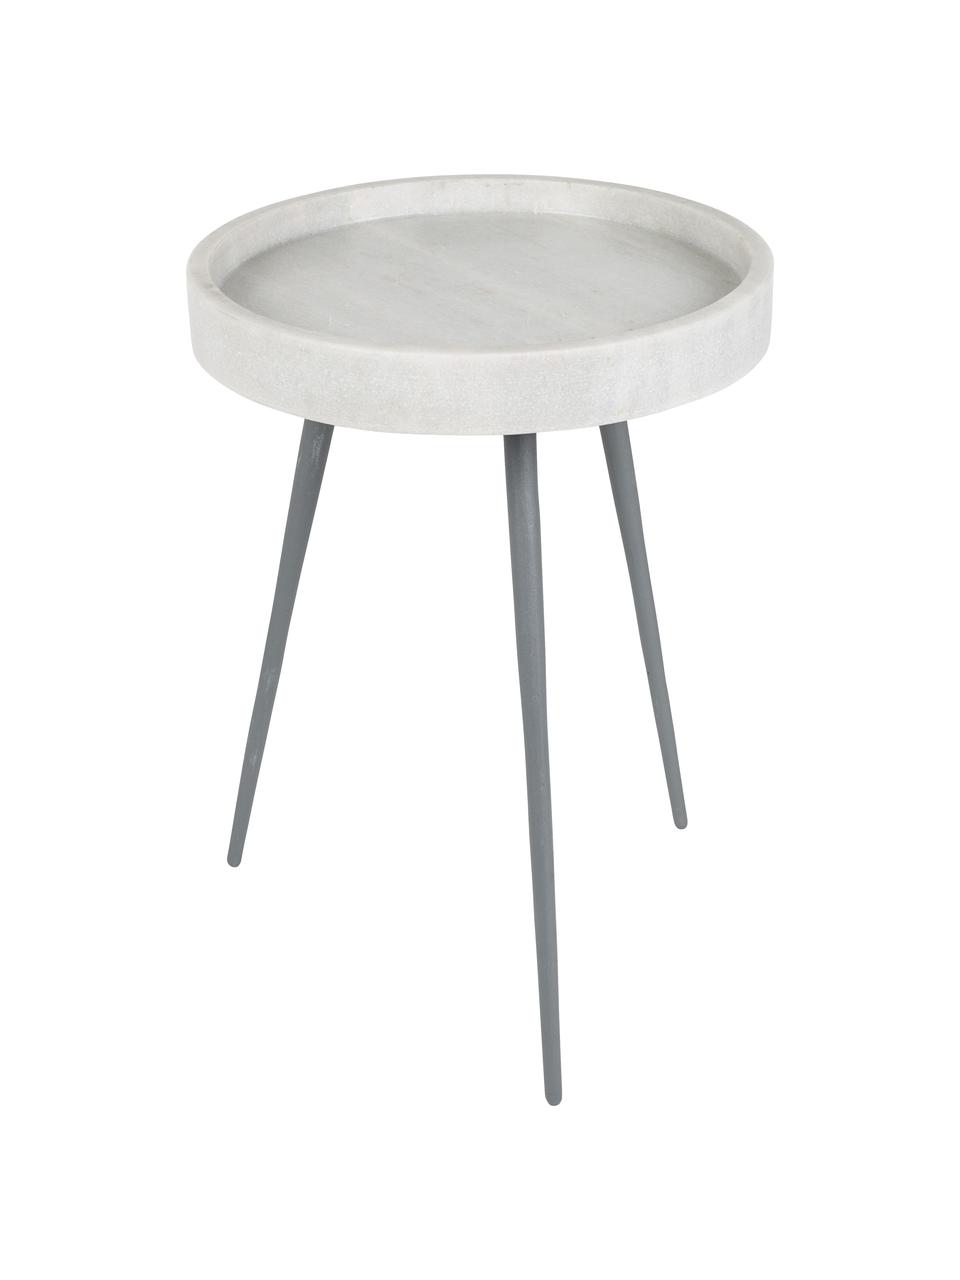 Runder Marmor-Beistelltisch Karrara, Tischplatte: Marmor, Beine: Metall, pulverbeschichtet, Weiß, Grau, Ø 33 x H 45 cm